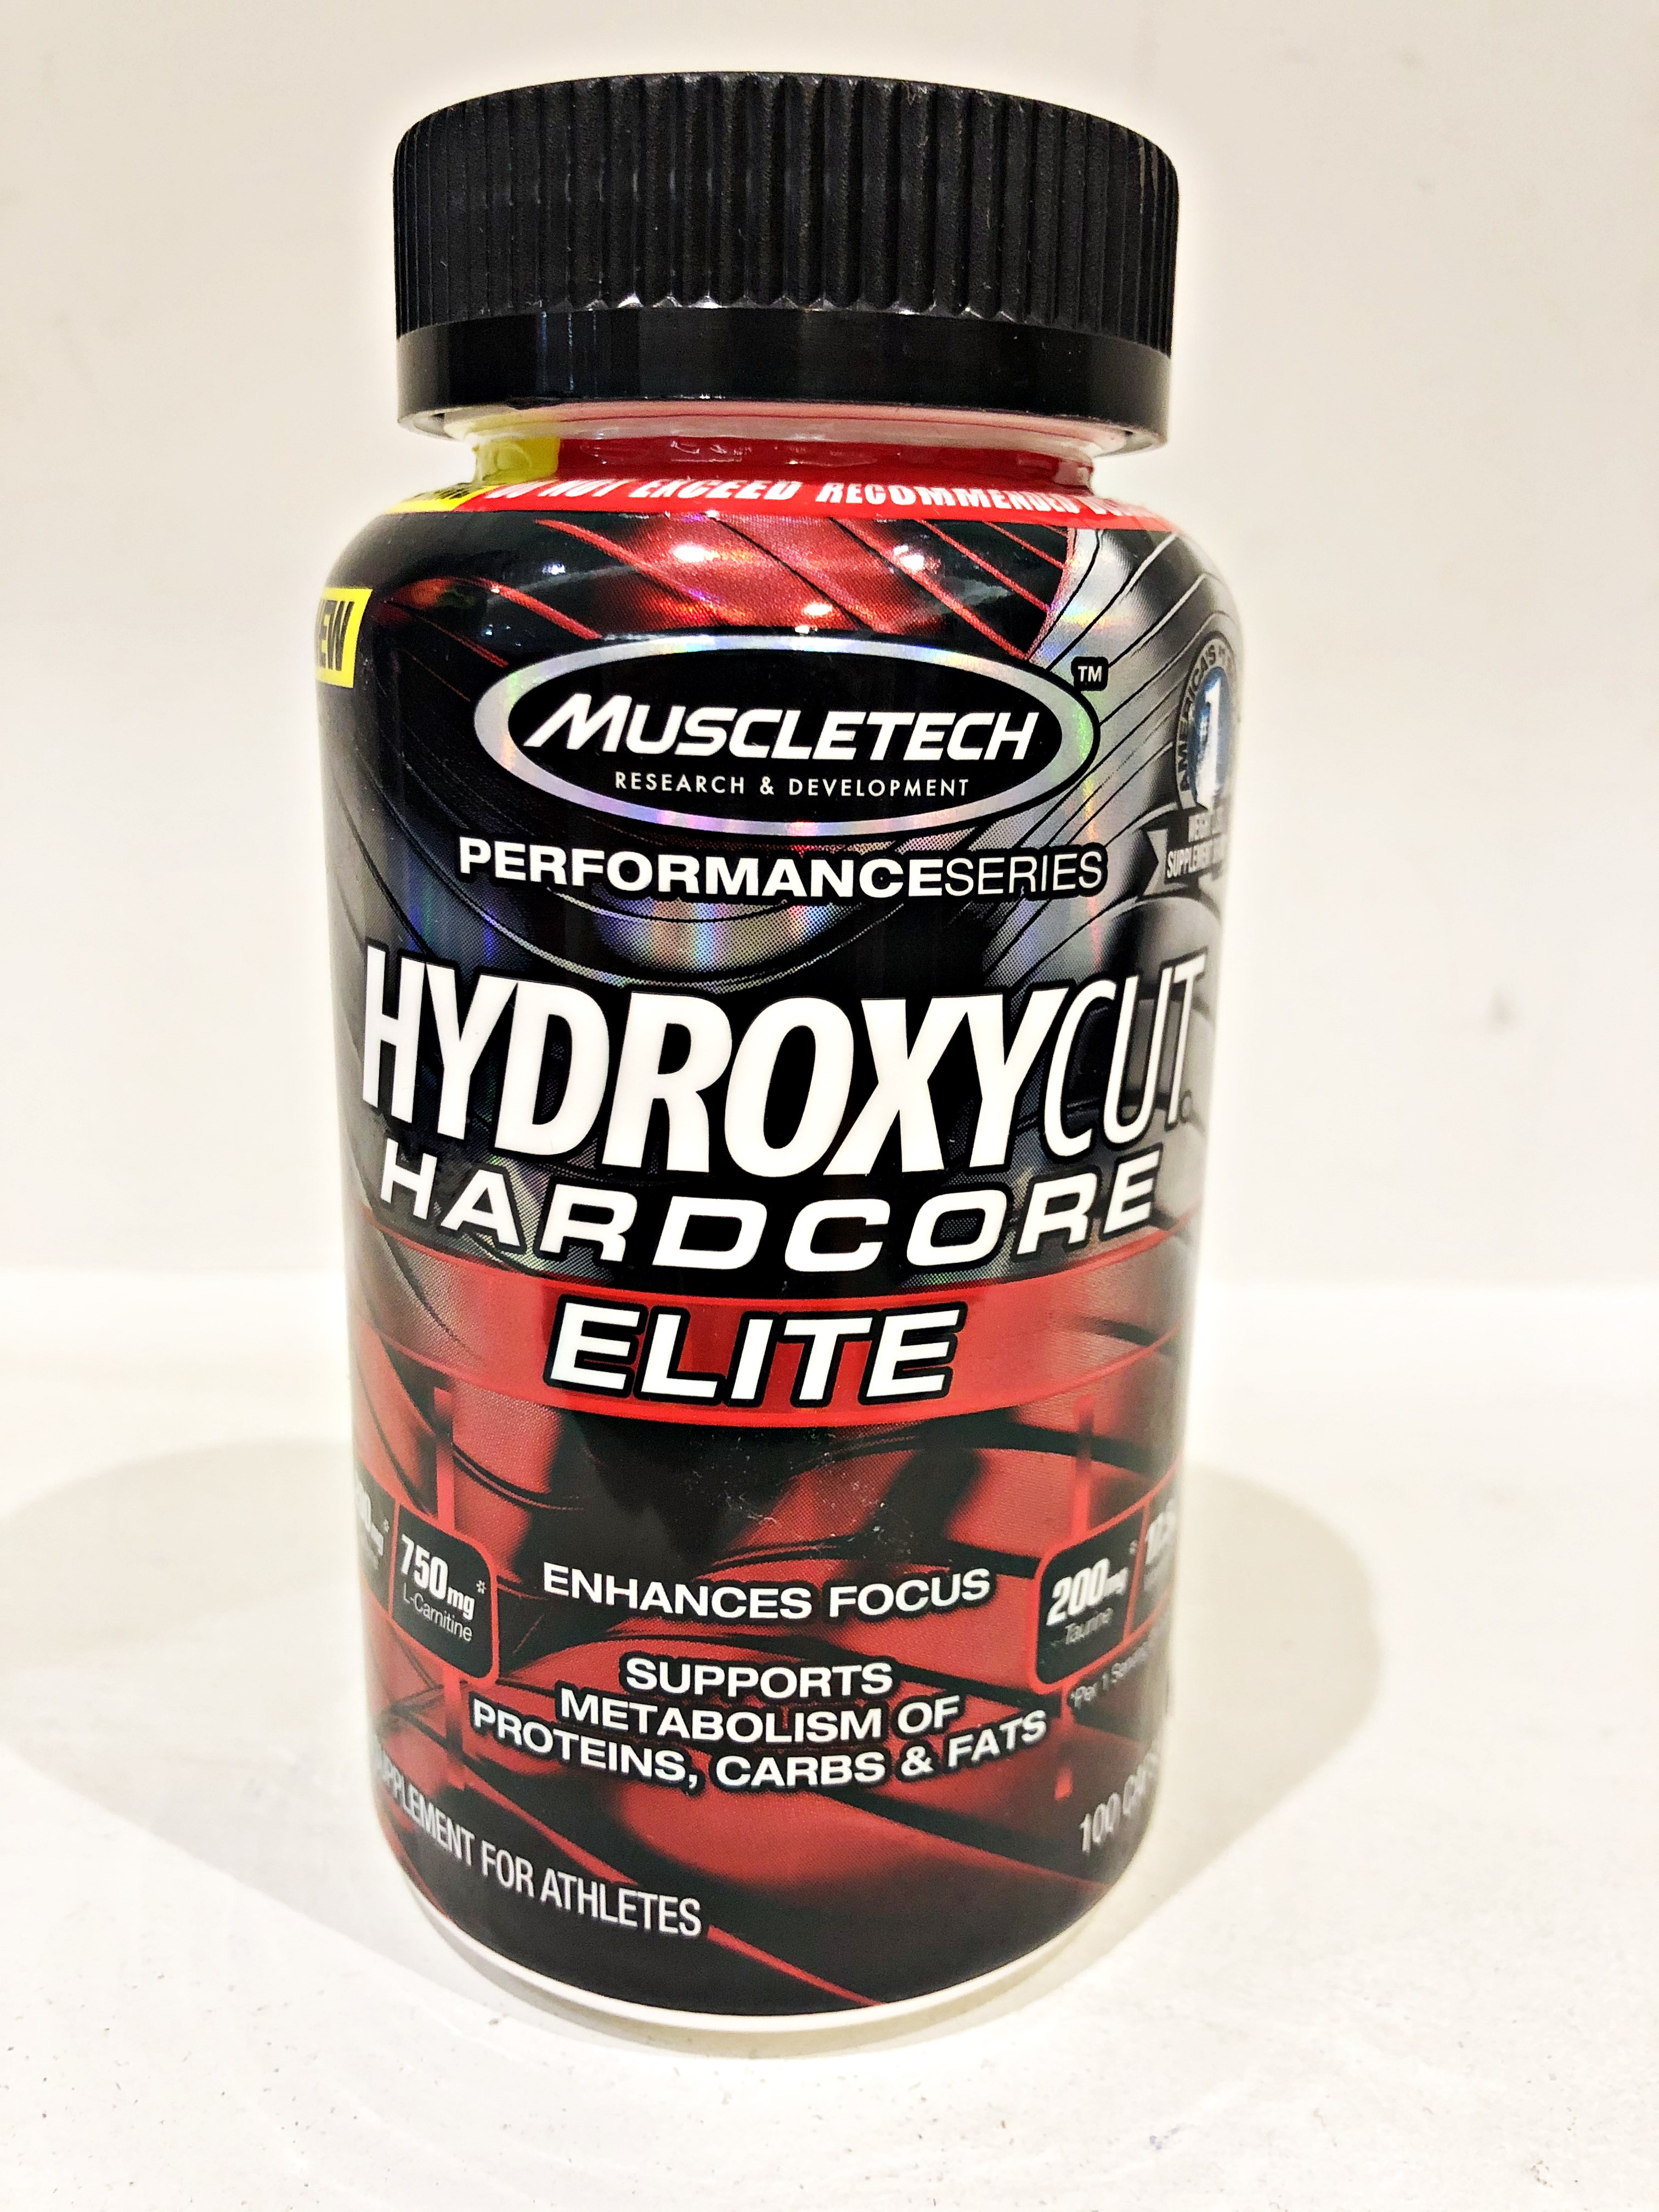 Quemador Hydroxycut Hardcore Elite Muscletech